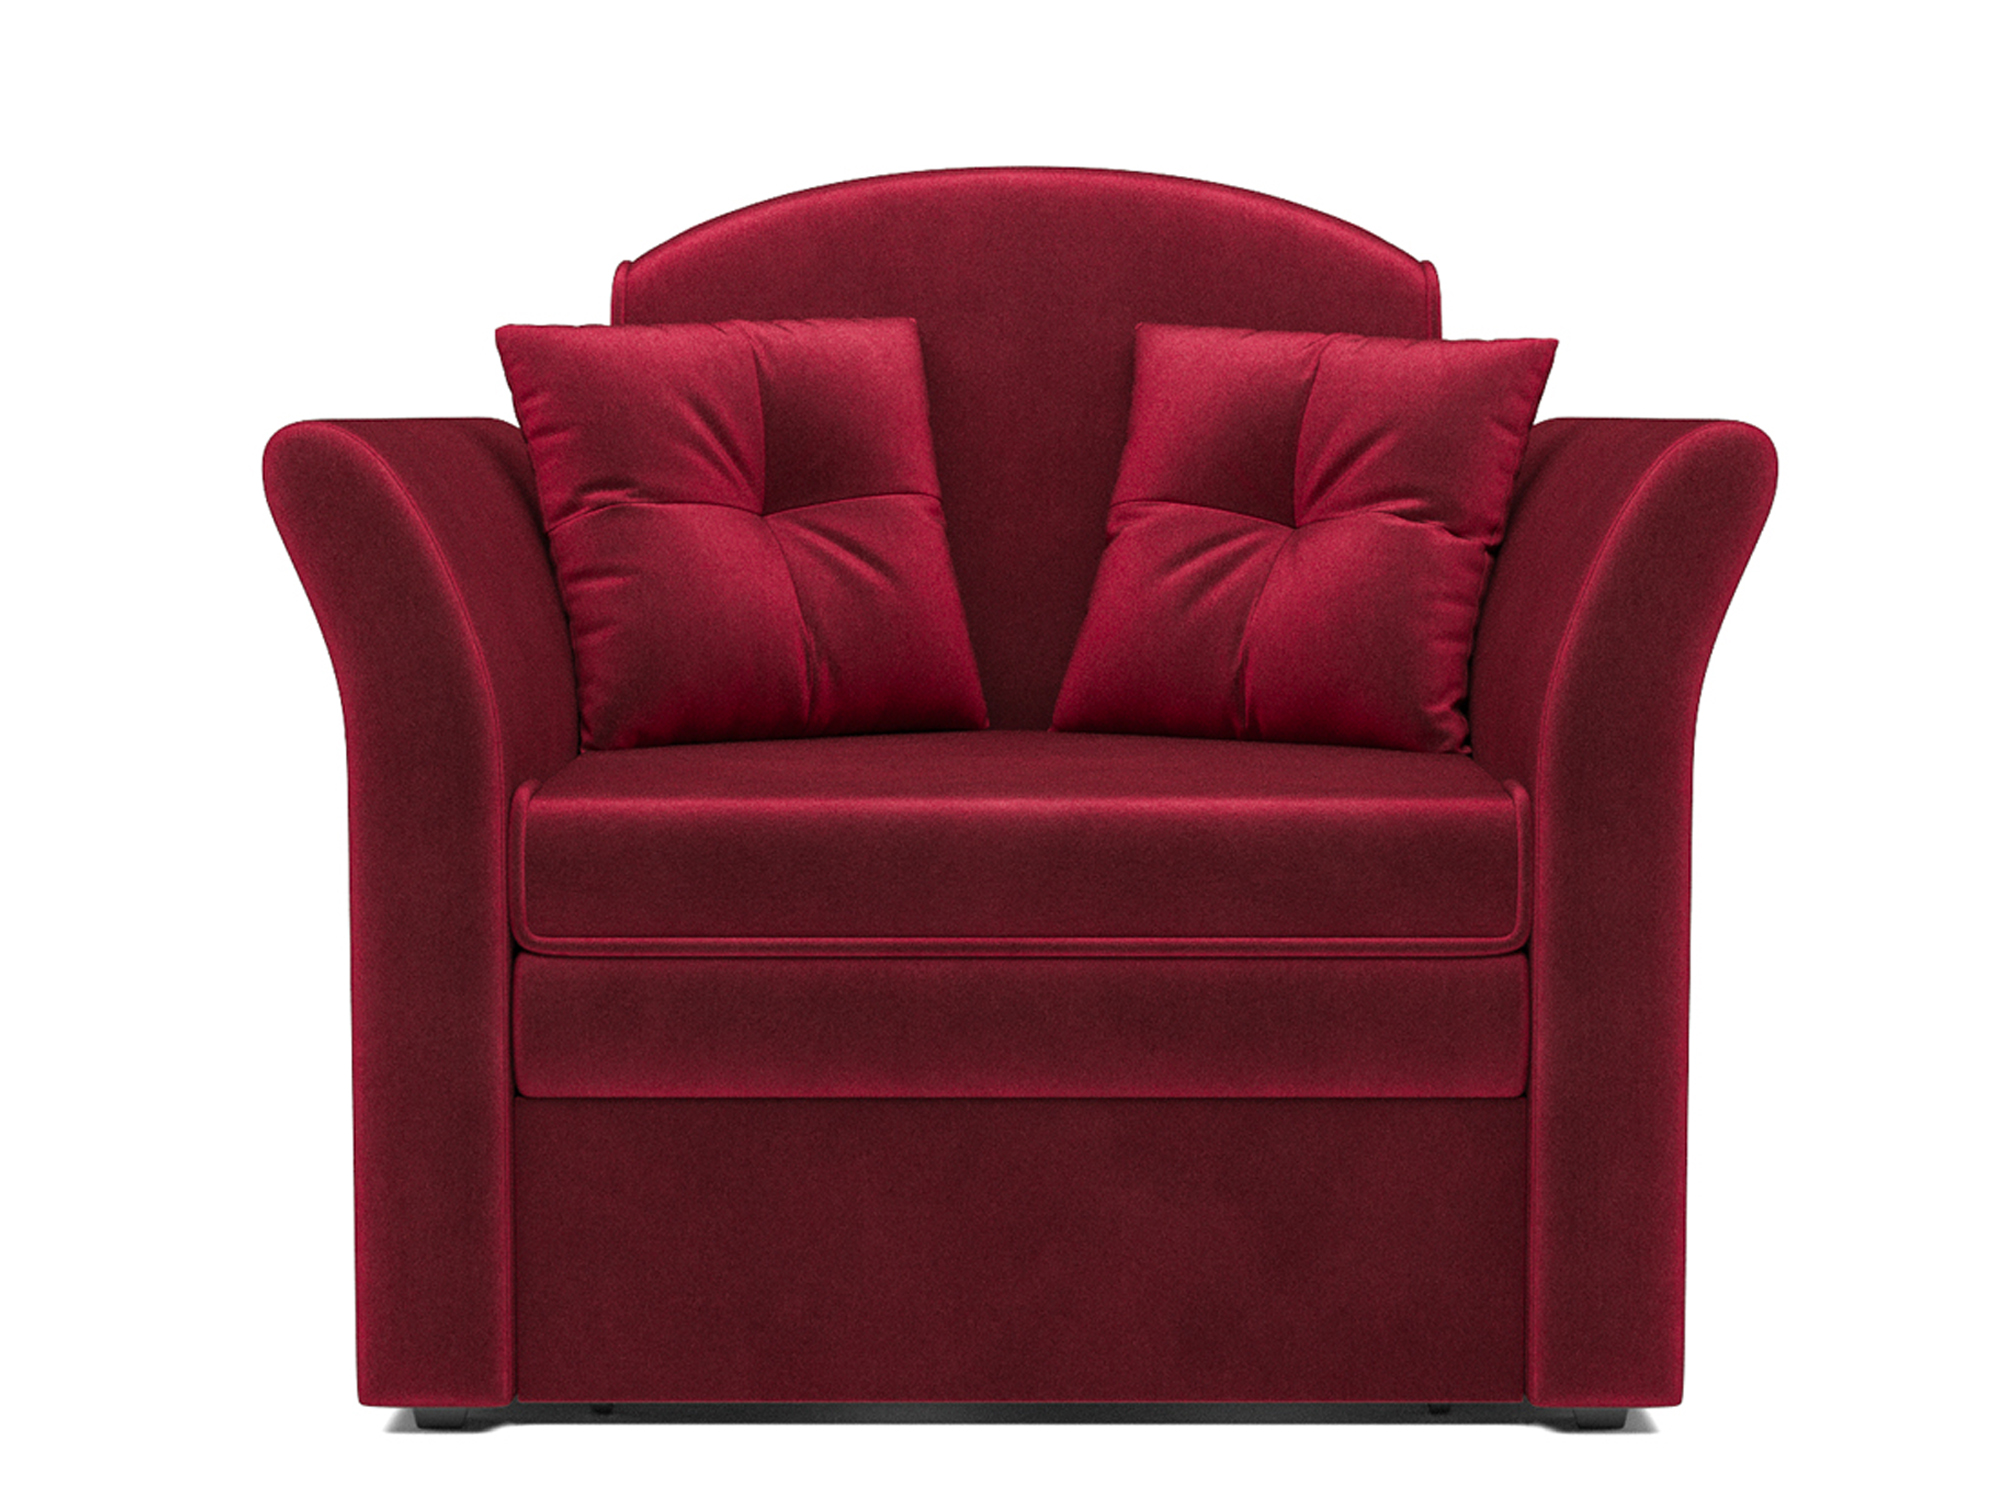 Кресло-кровать Малютка 2 MebelVia Красный, Вельвет бархатного типа, ДСП, Брус сосны, Фанера диван малютка 2 mebelvia красный вельвет бархатного типа дсп брус сосны фанера